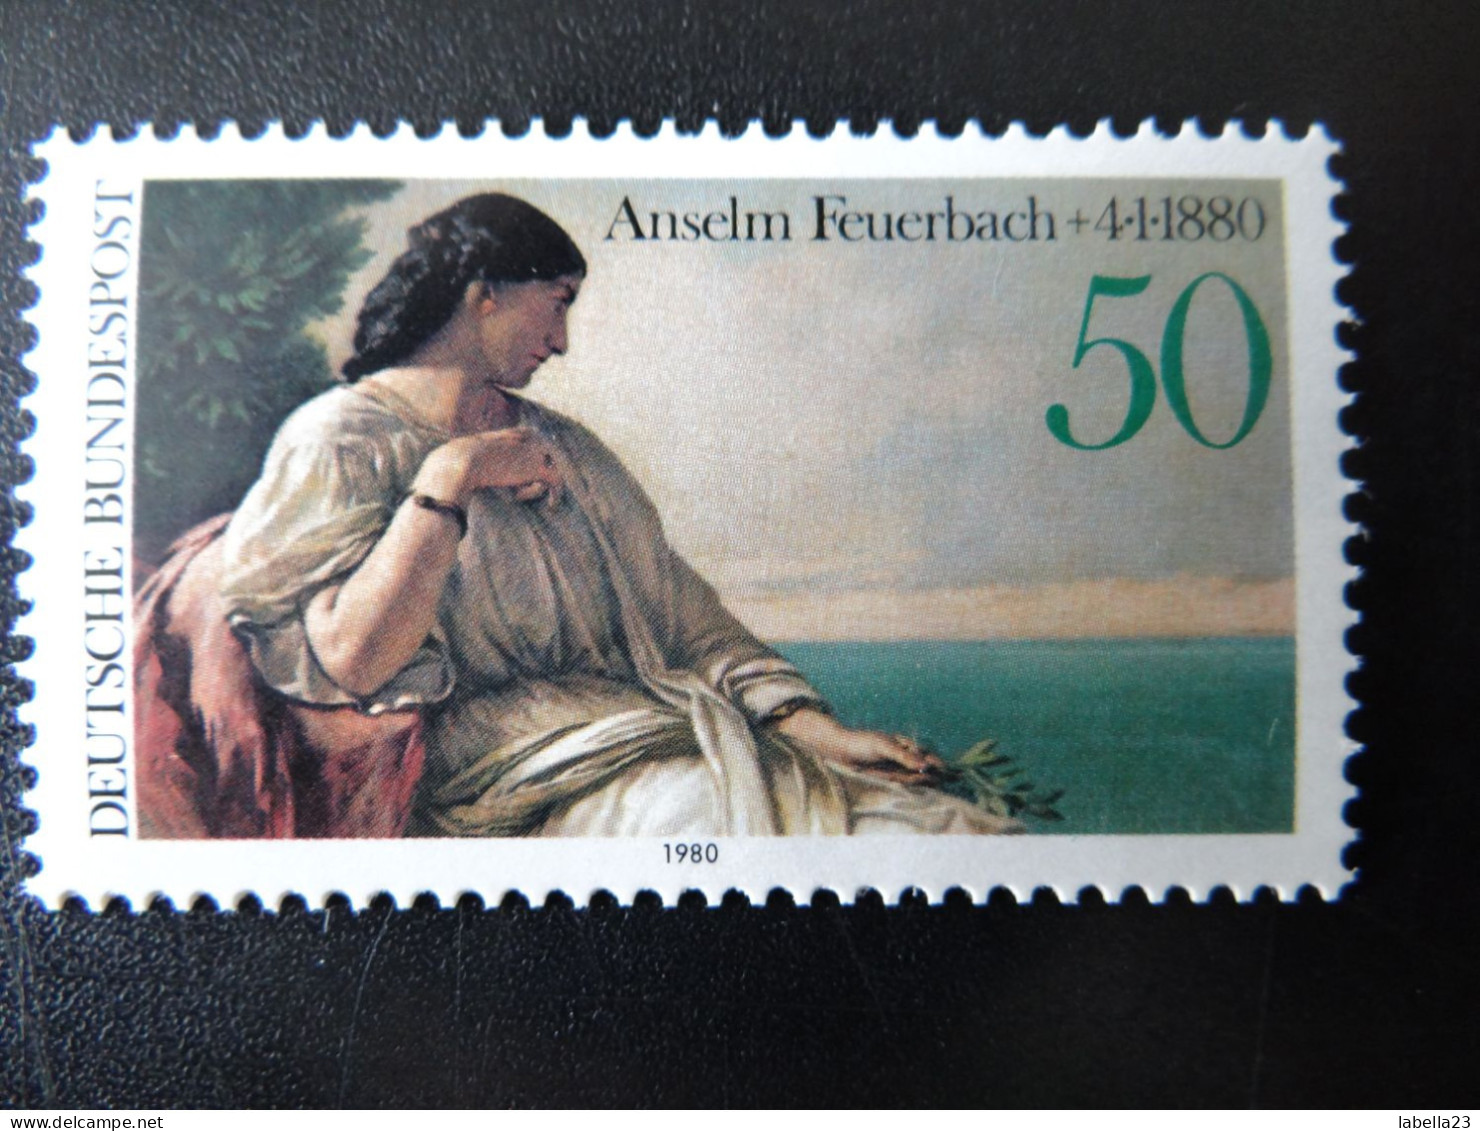 1980 Bund,  - Anselm Feuerbach - Iphigenie - Postfrisch - MiNr. 1033 - Impressionismus